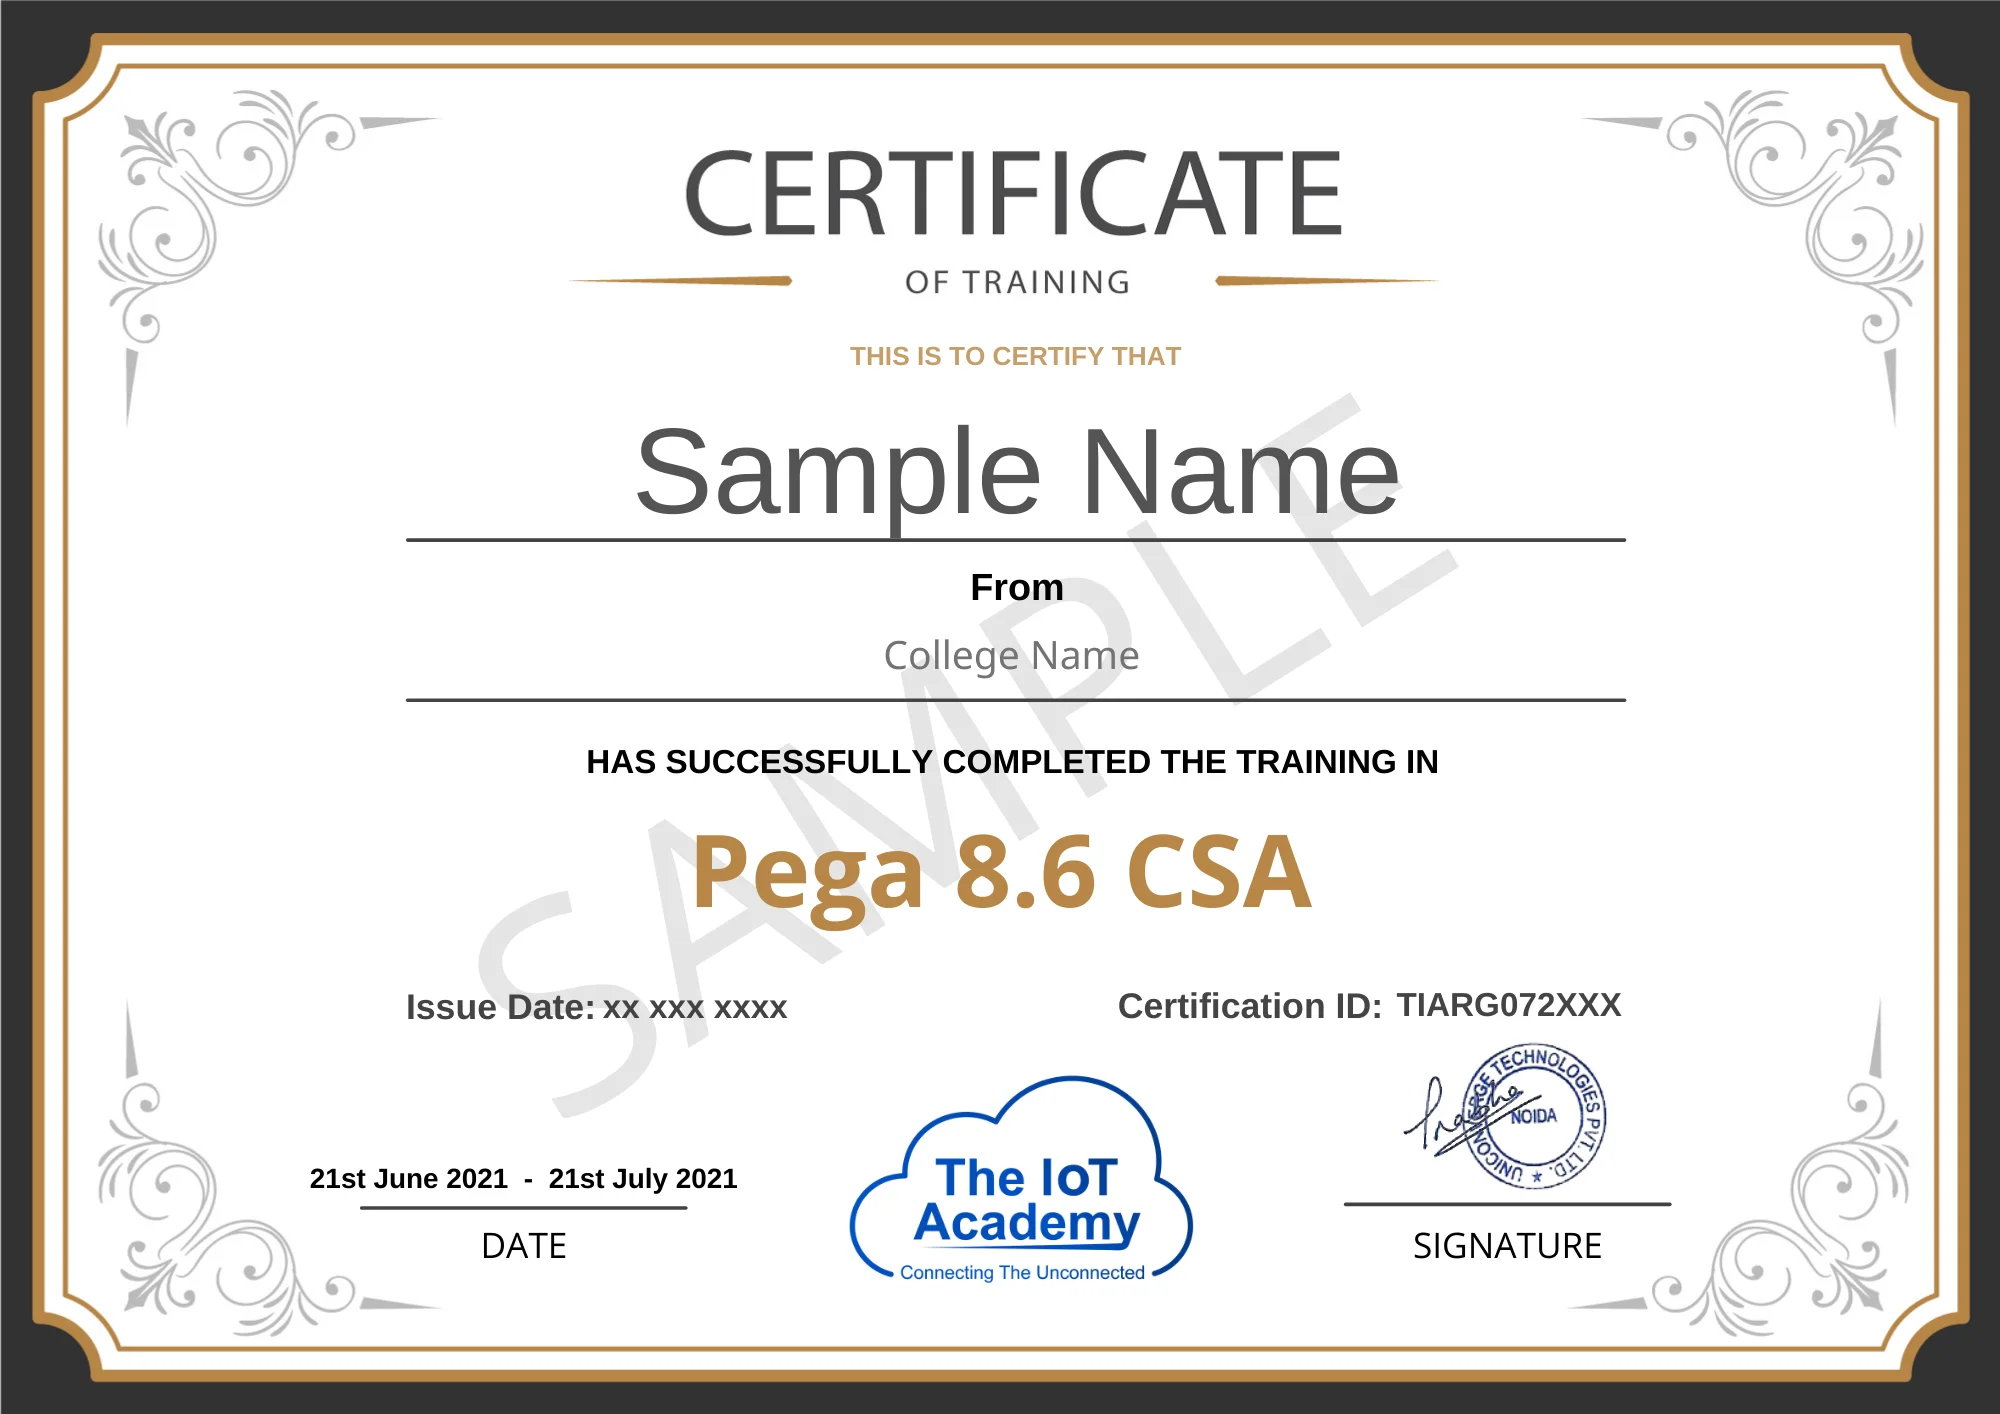 pega 8.6 csa certificate